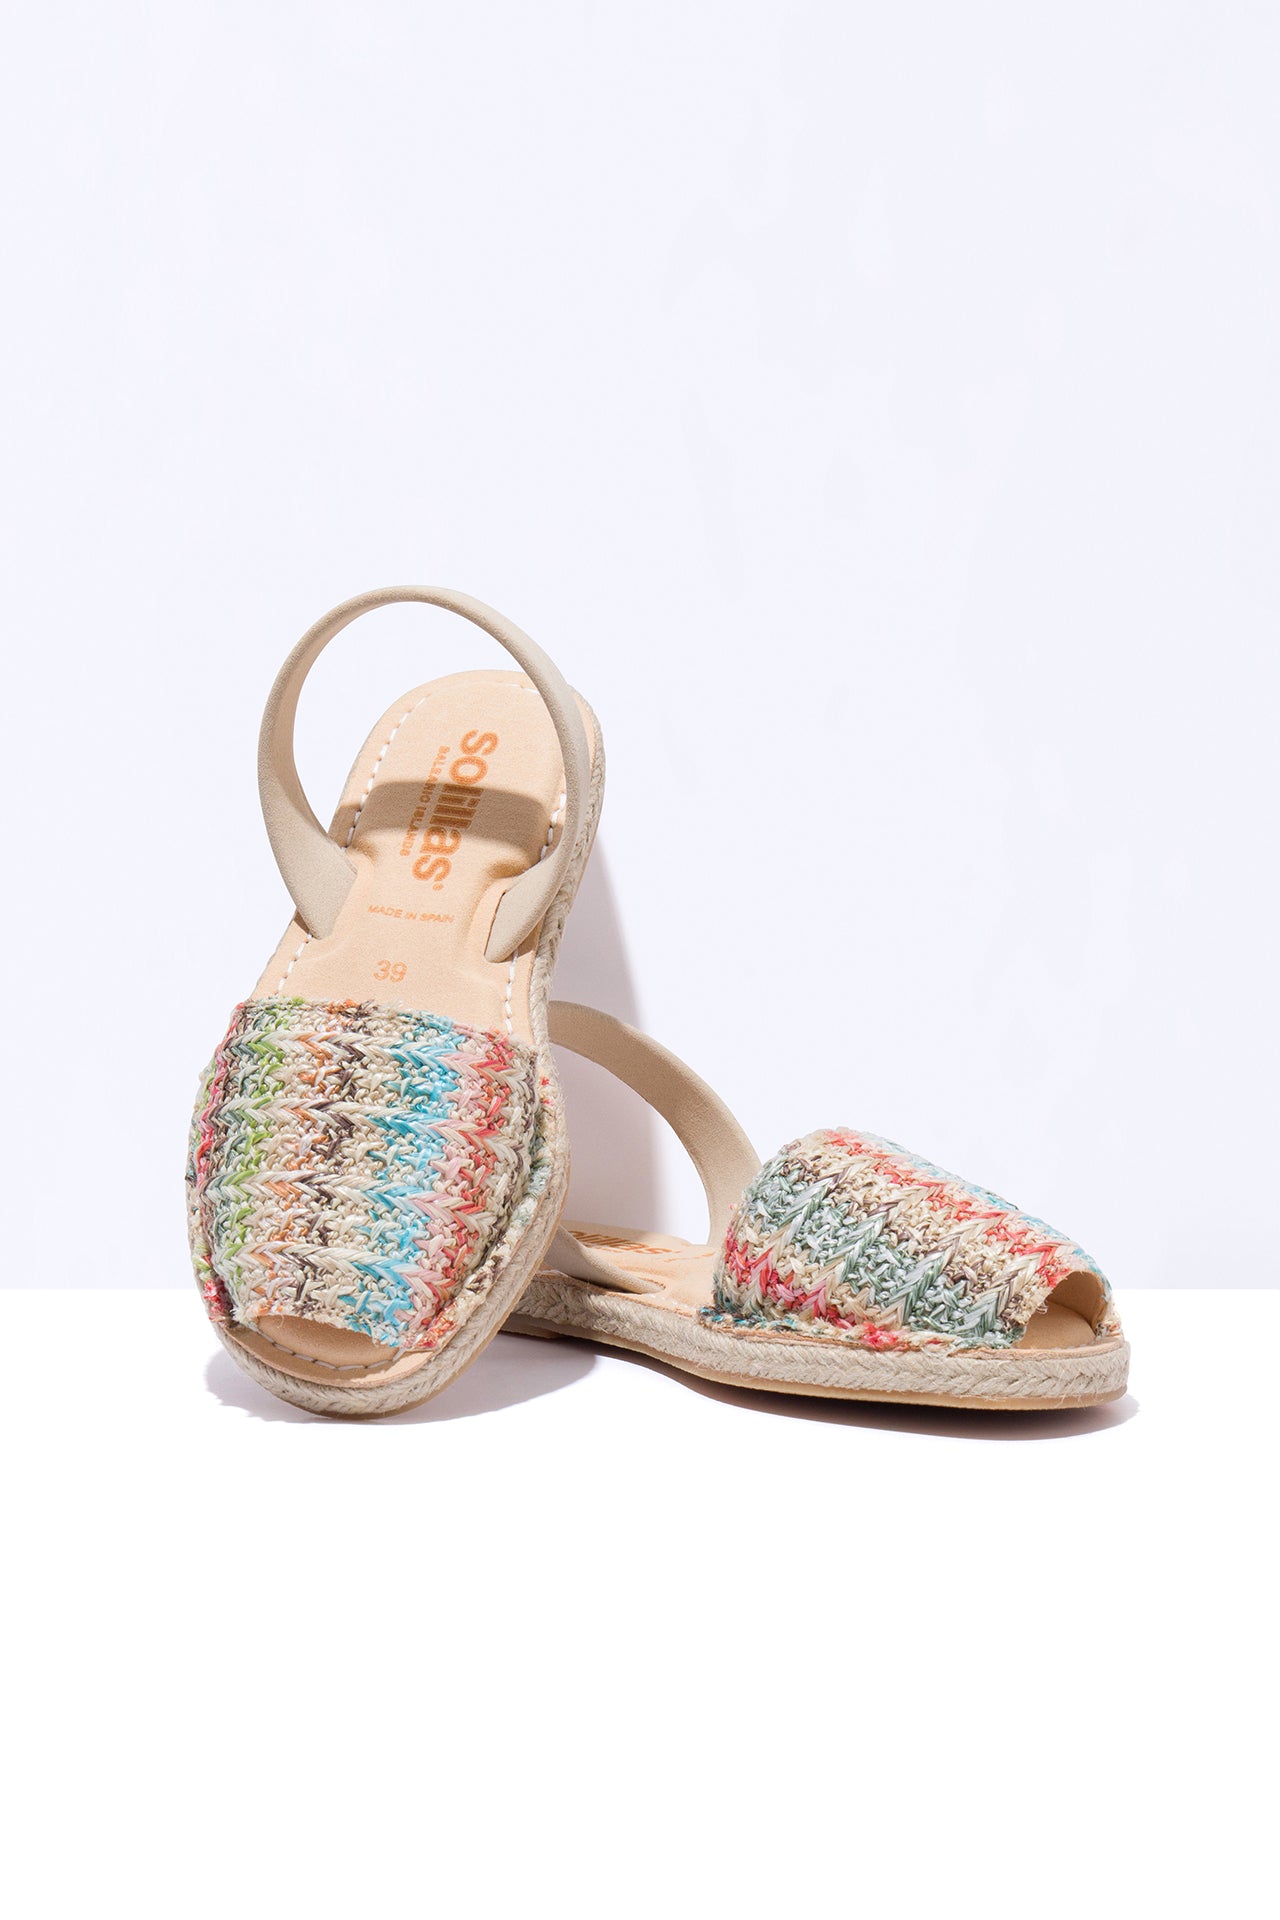 Dalias Mimoso Vegan - Original Menorcan Sandals in Boho Weave